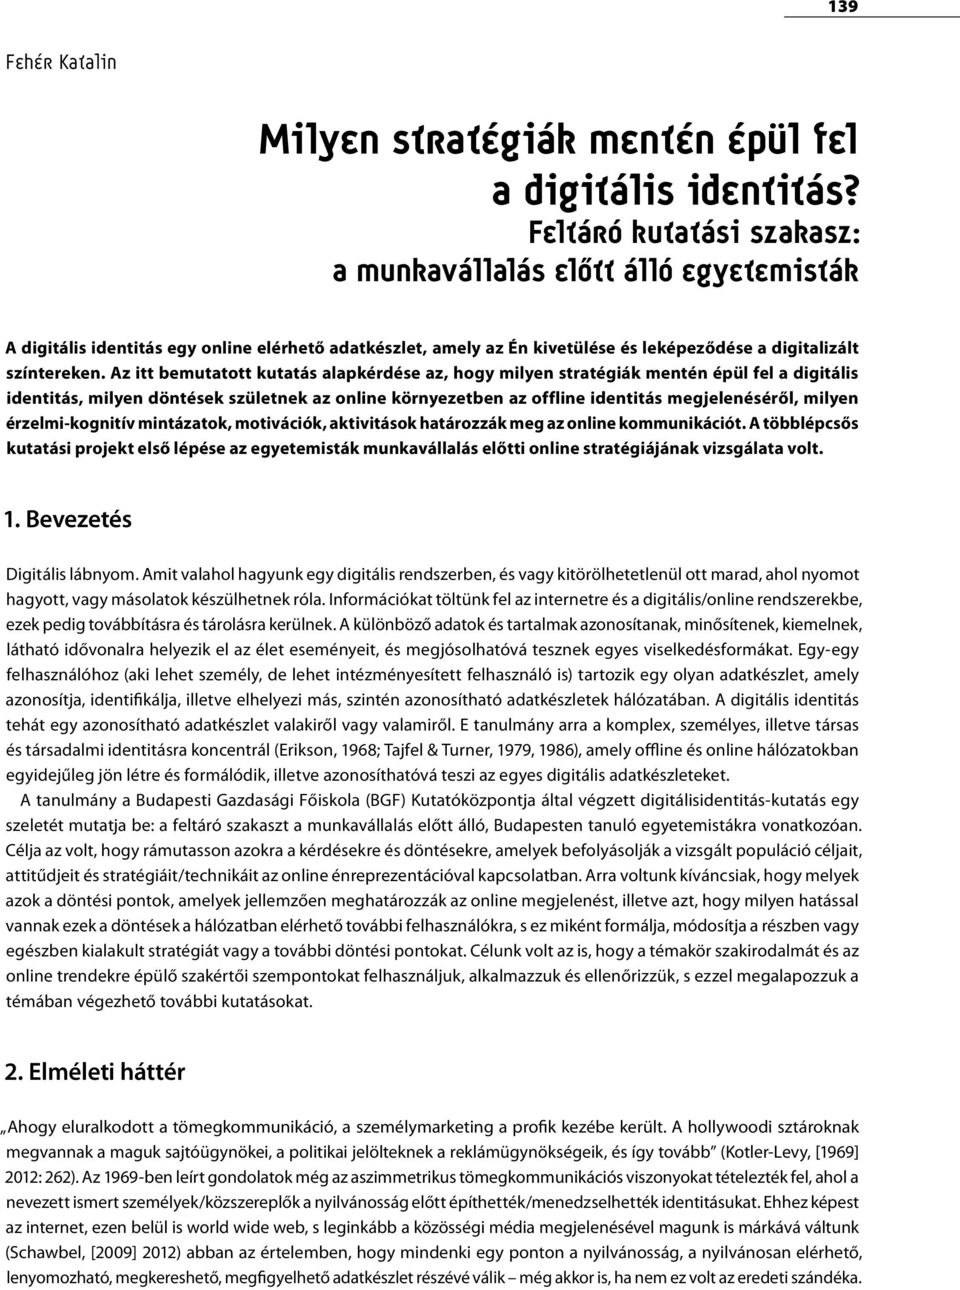 Az itt bemutatott kutatás alapkérdése az, hogy milyen stratégiák mentén épül fel a digitális identitás, milyen döntések születnek az online környezetben az offline identitás megjelenéséről, milyen